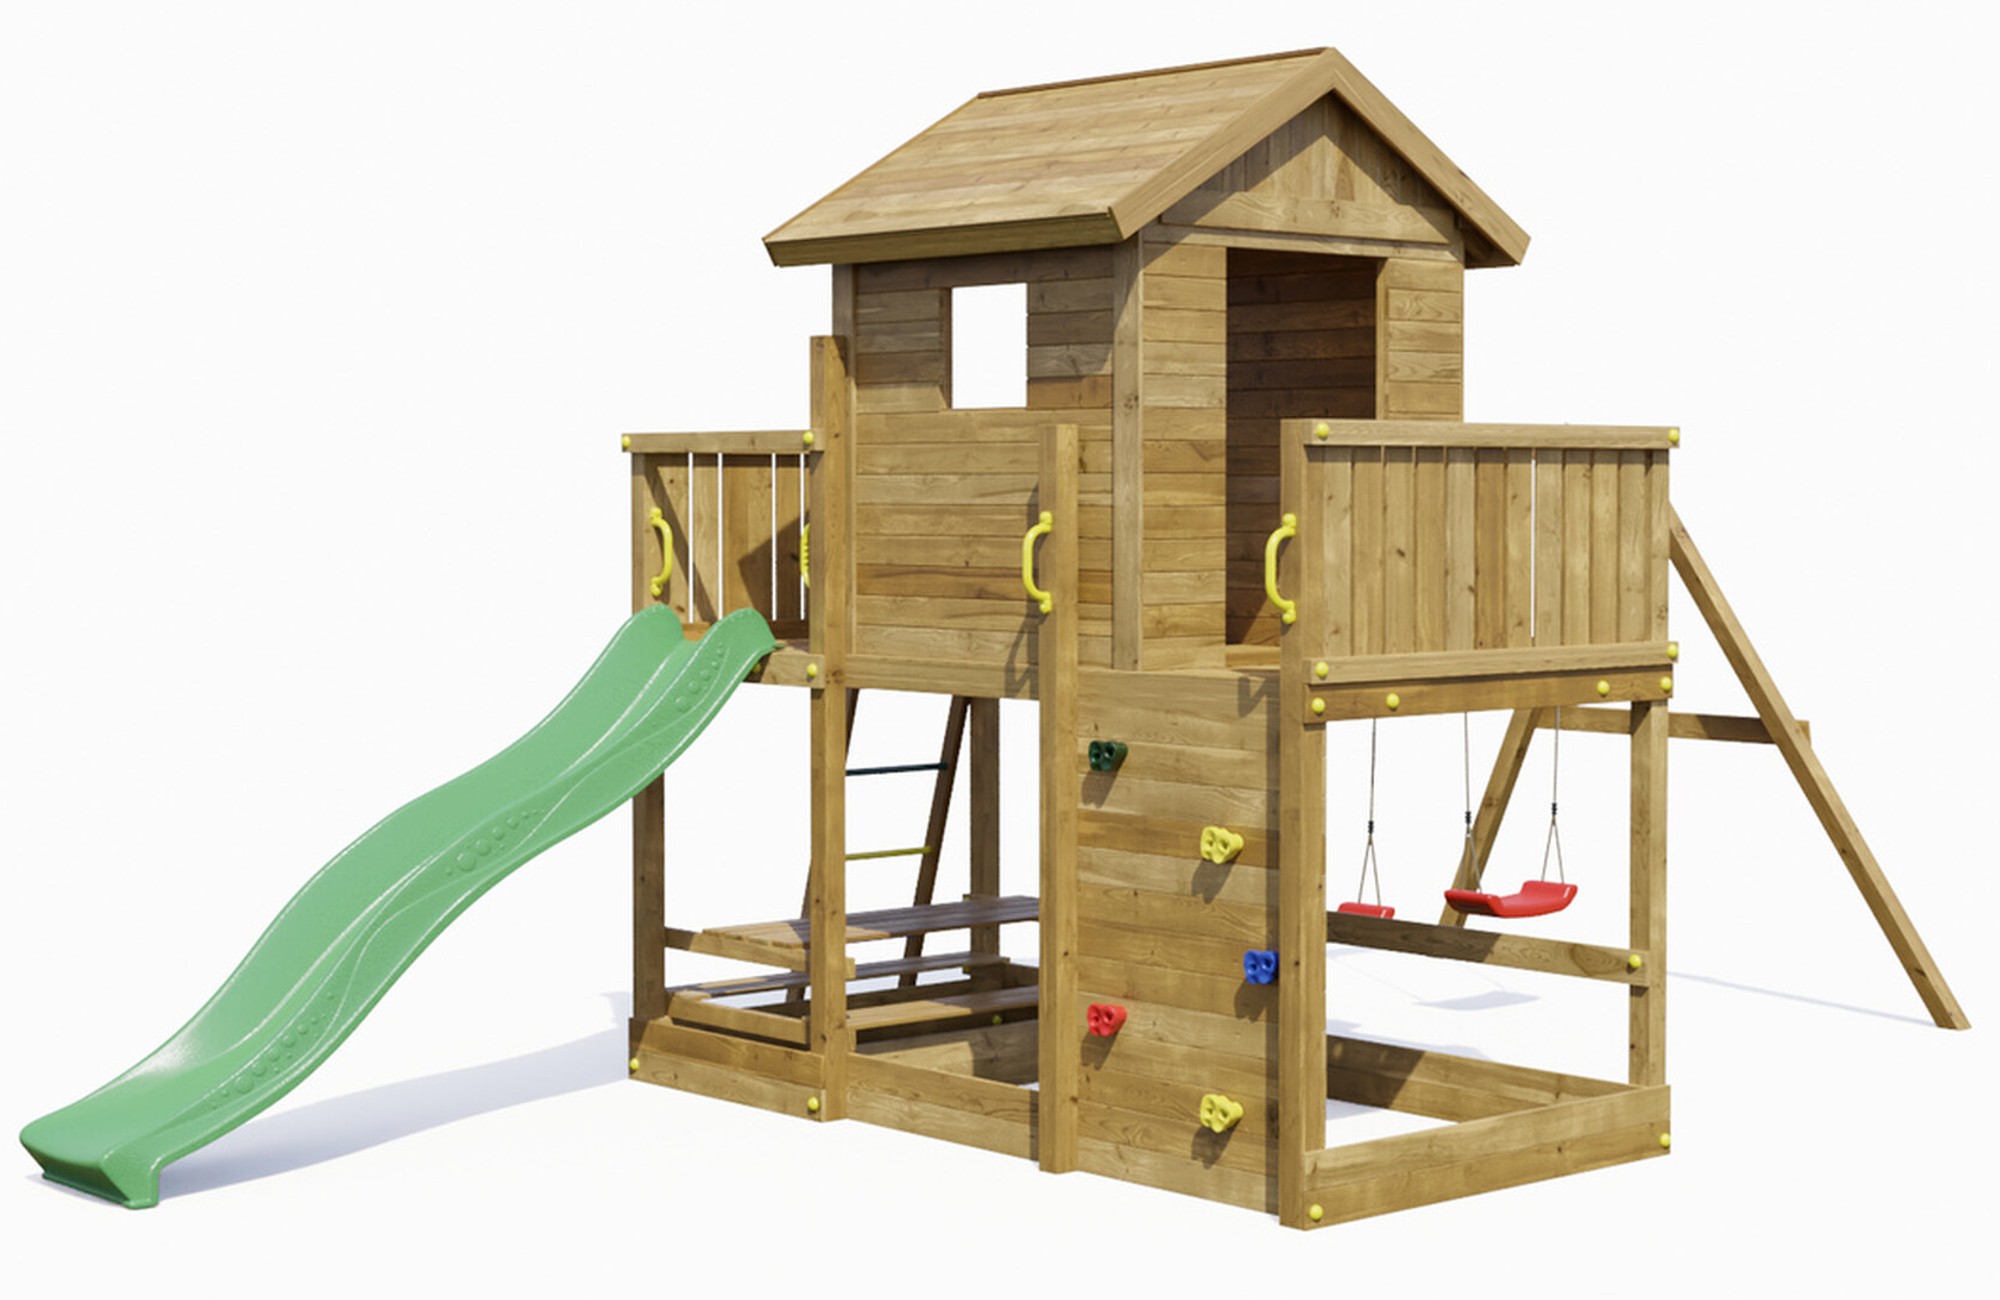 Plac zabaw drewniany ogrodowy Mars KDI domek, zjedalnia, 2x hutawka, st piknikowy, cianka wspinaczkowa